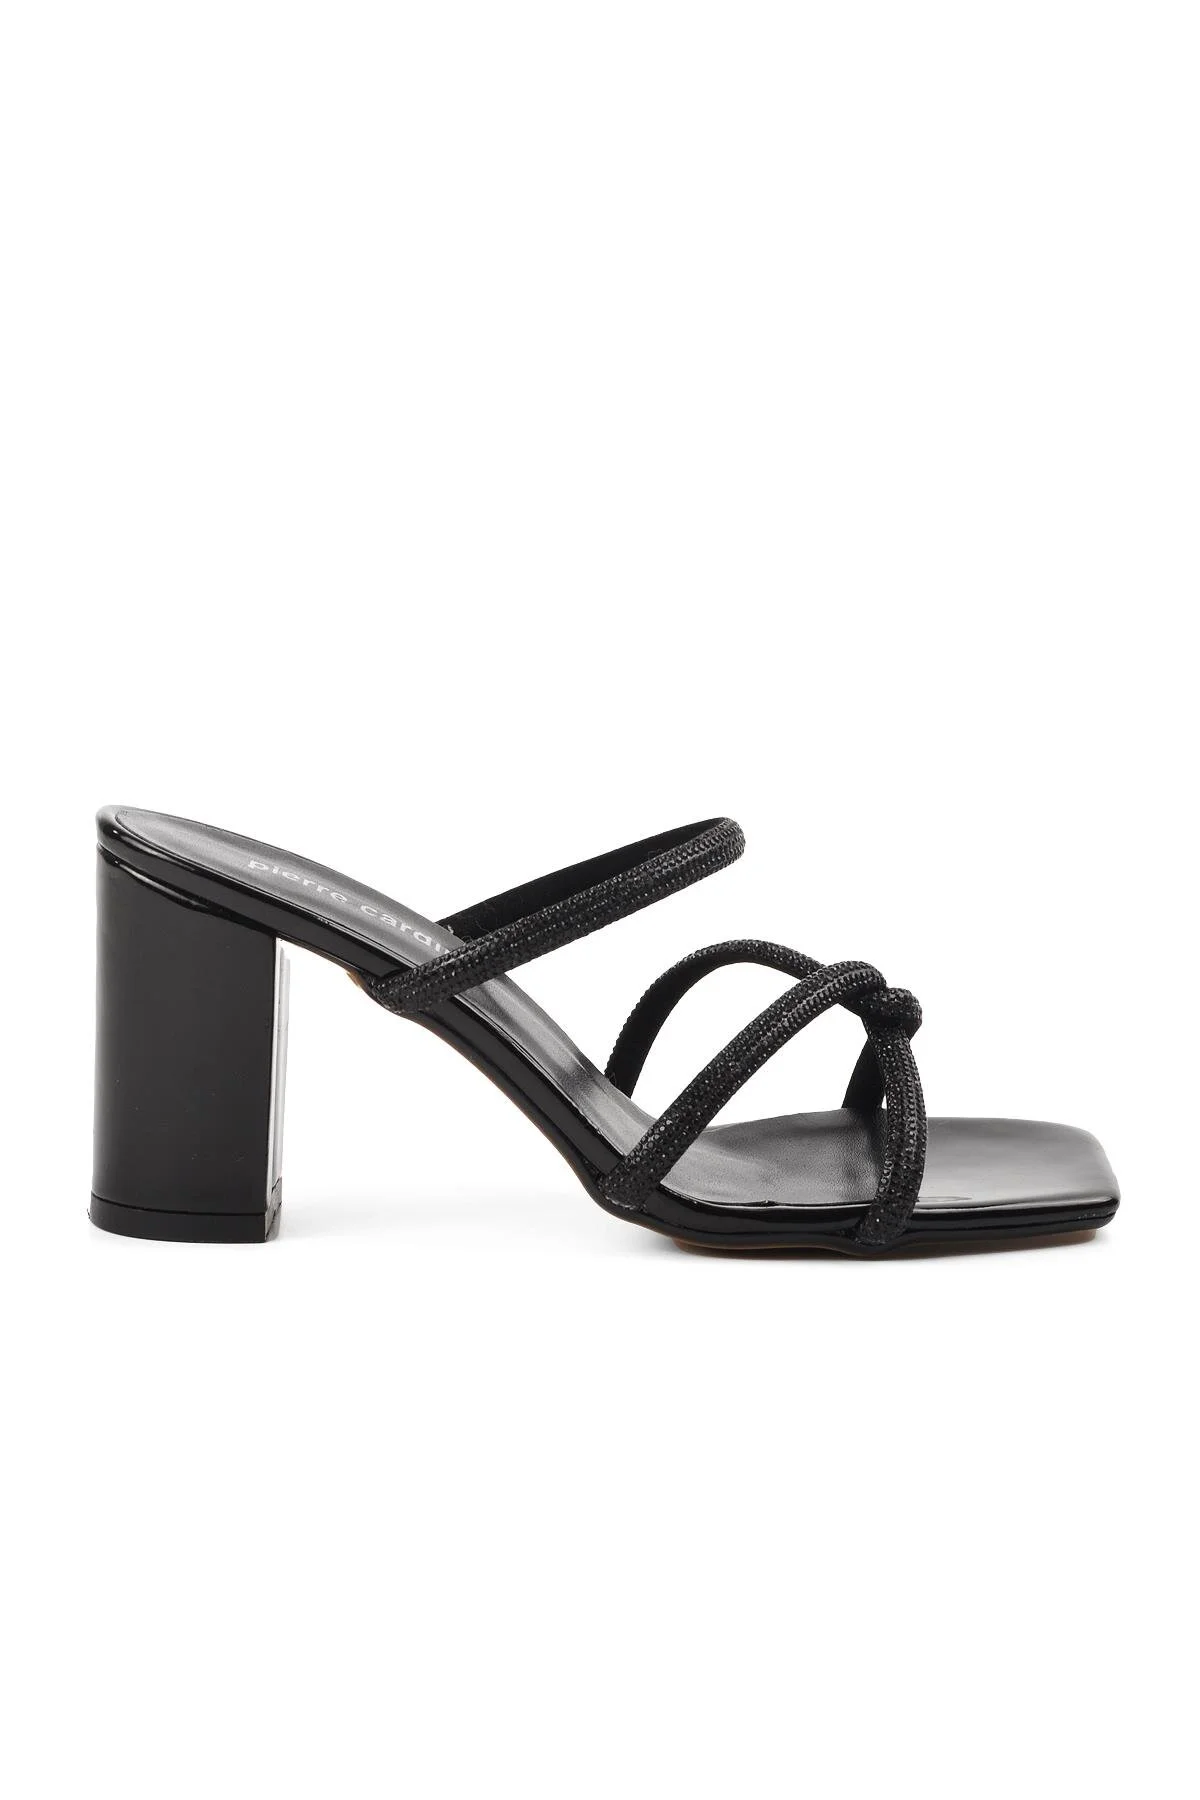 Kadın Topuklu Ayakkabı PC-52218-Siyah - Thumbnail